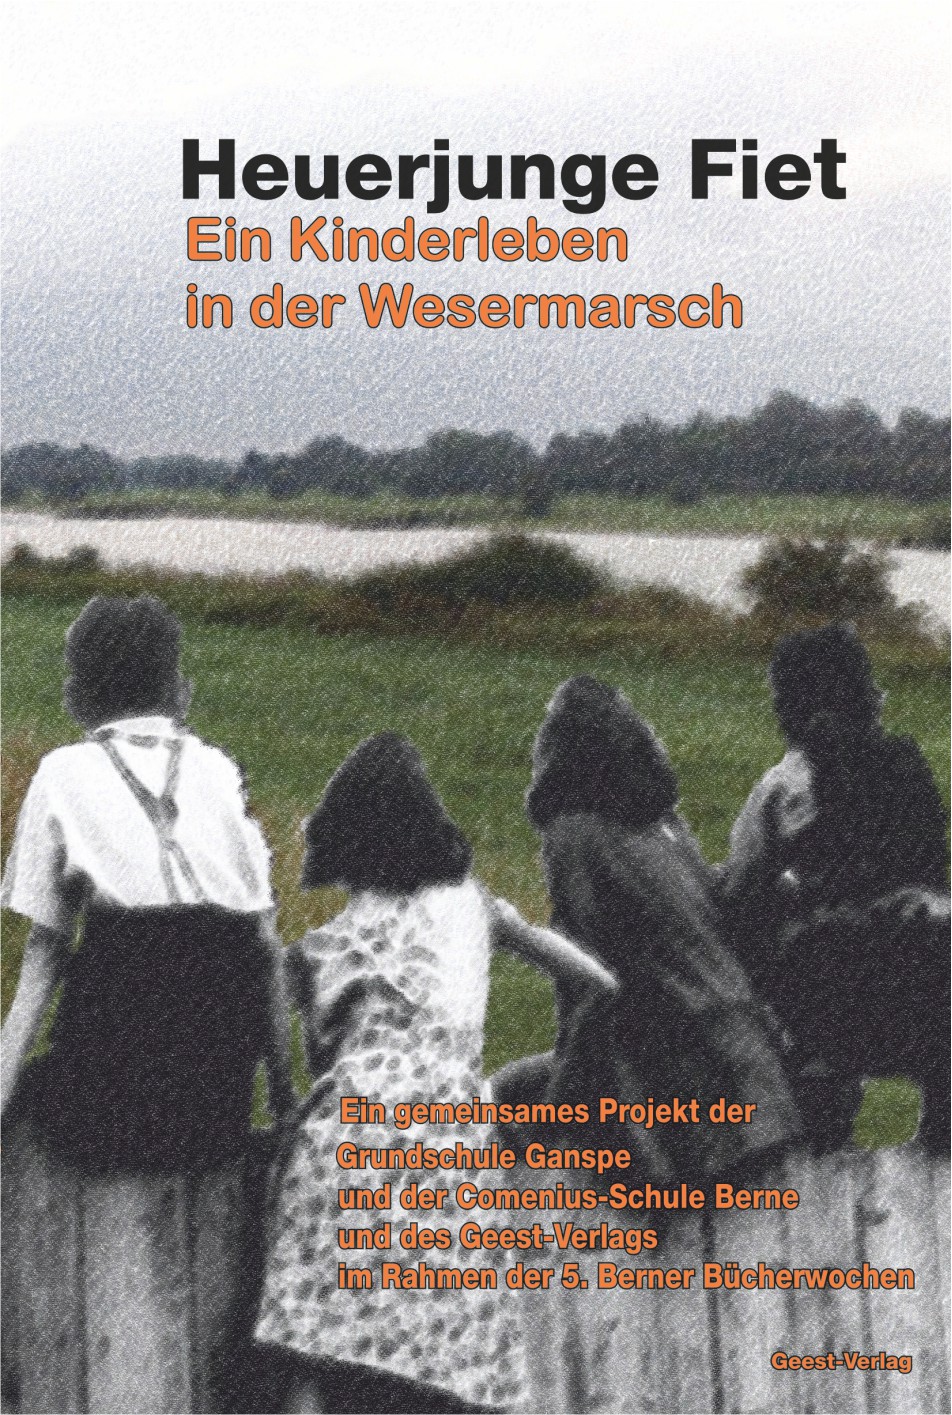 book international bibliography of austrian philosophy internationale bibliographie zur osterreichischen